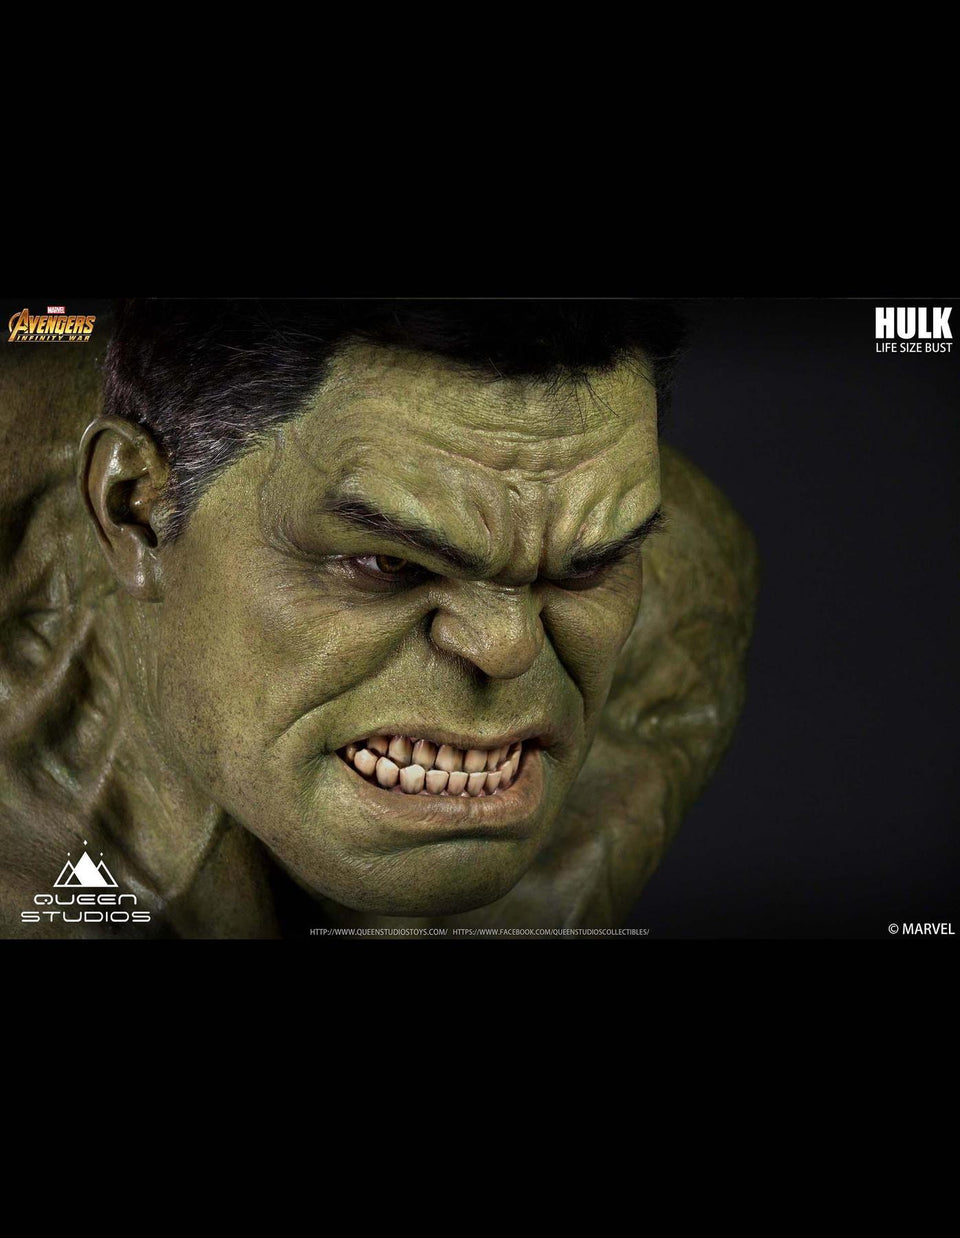 Queen Studios Hulk